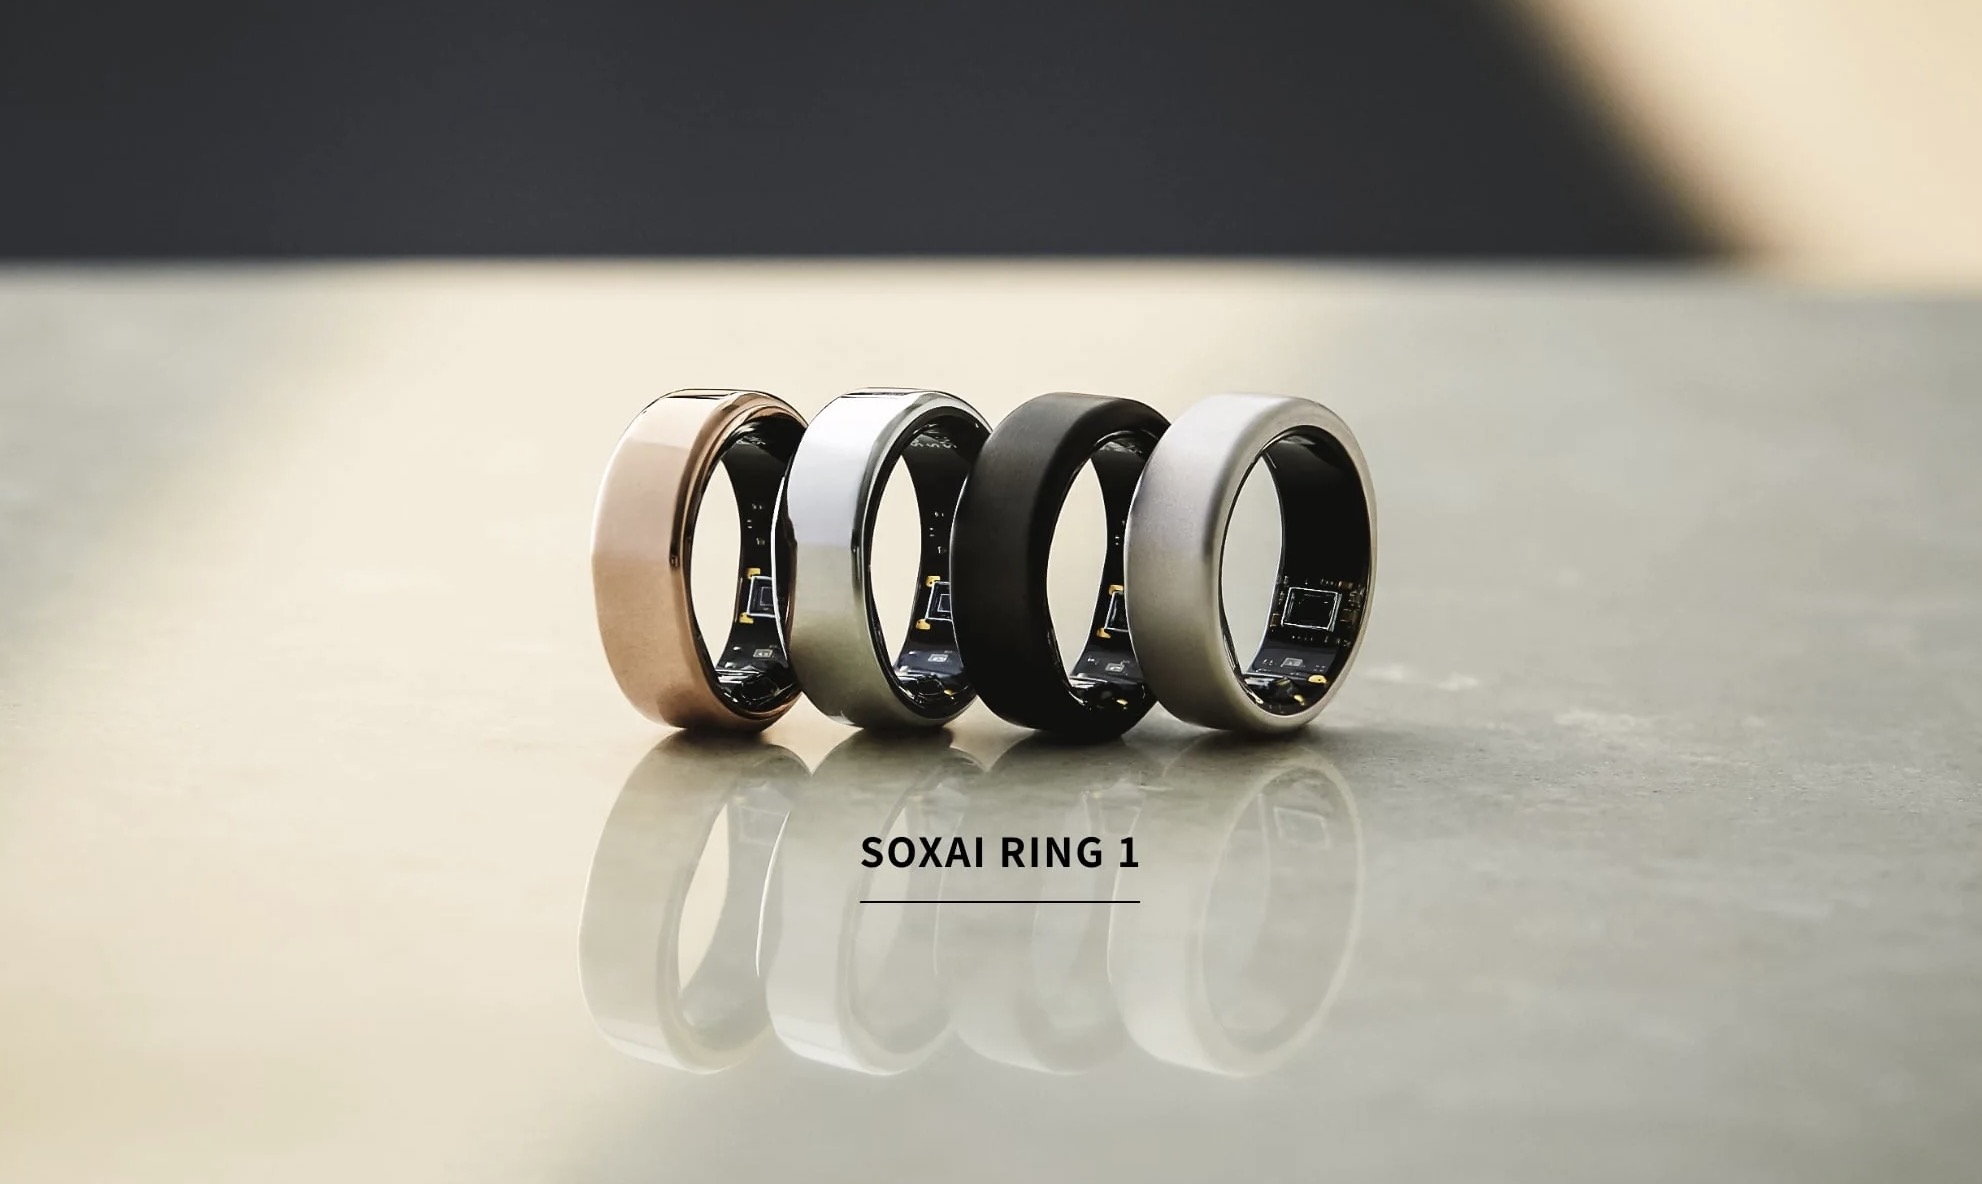 SOXAI Ring サイジングキット - 健康